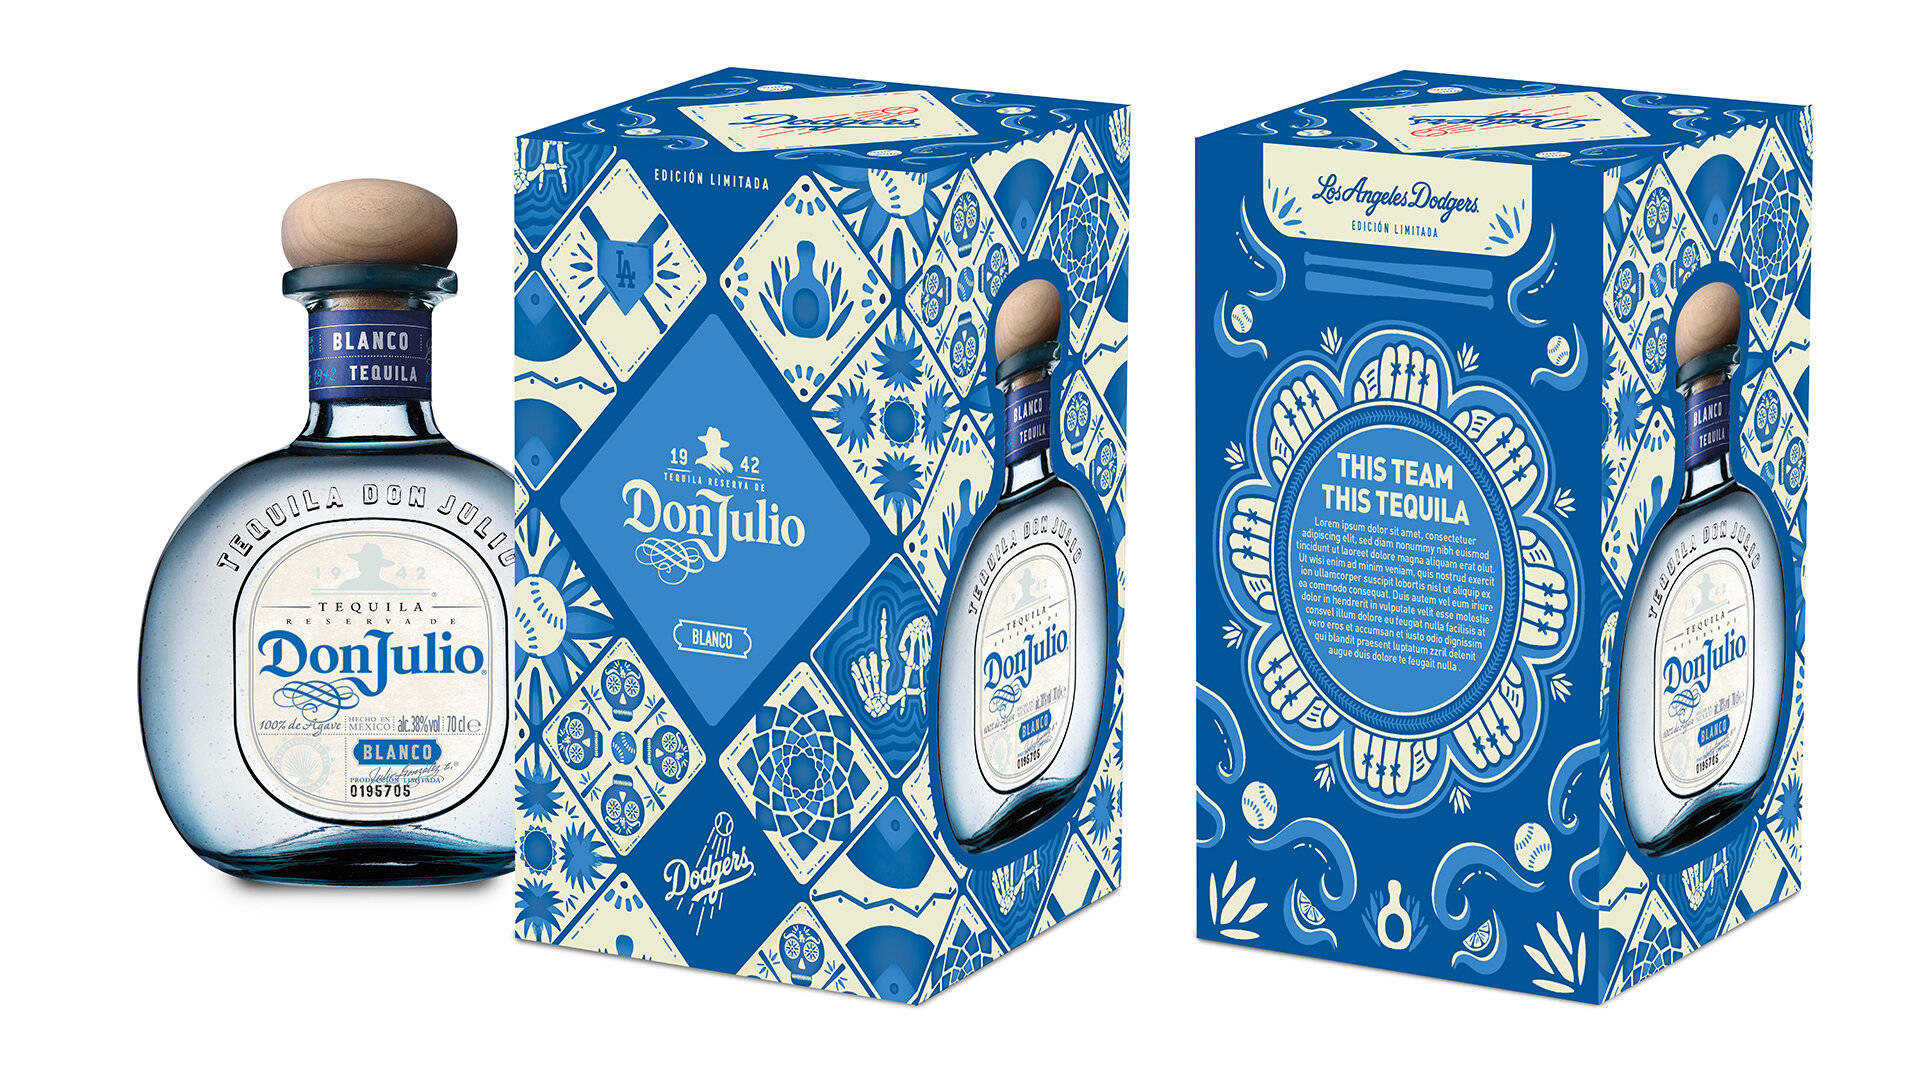 Donjulio Tequila Blanco Kisten (auf Dem) Computer- Oder Handyhintergrund. Wallpaper